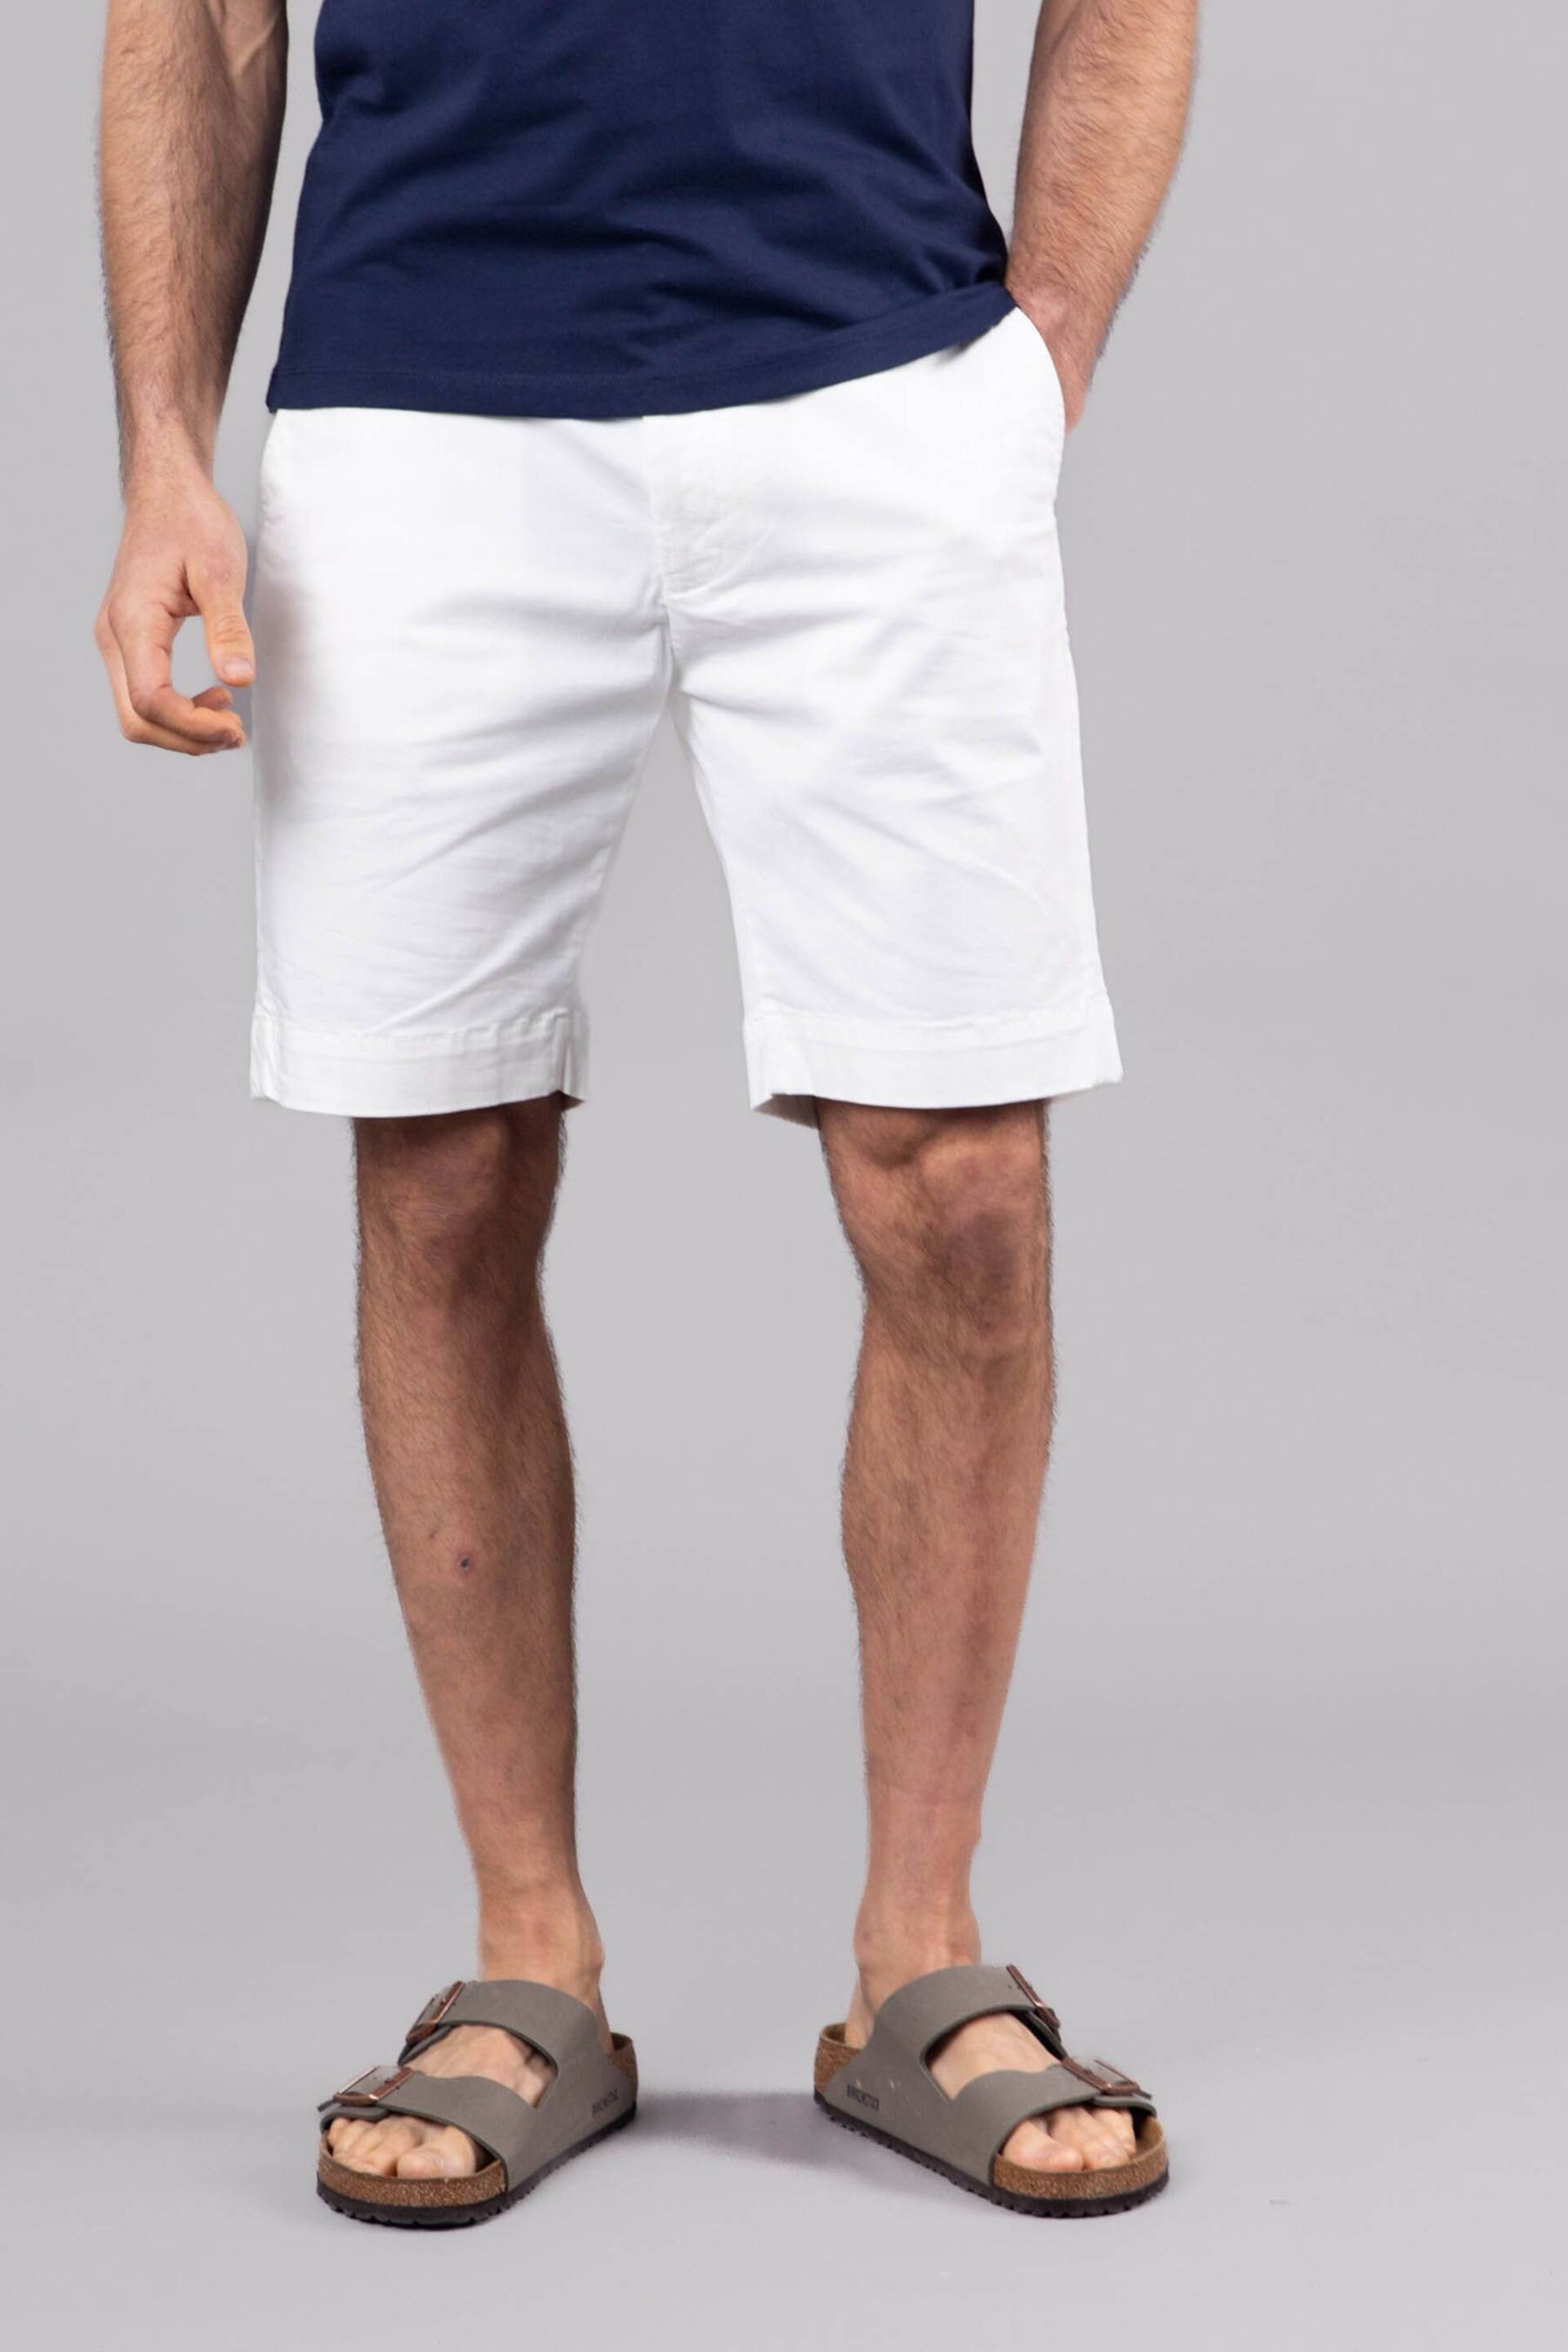 Lakeland Clothing Cream Fynn Cotton Shorts - Image 1 of 4